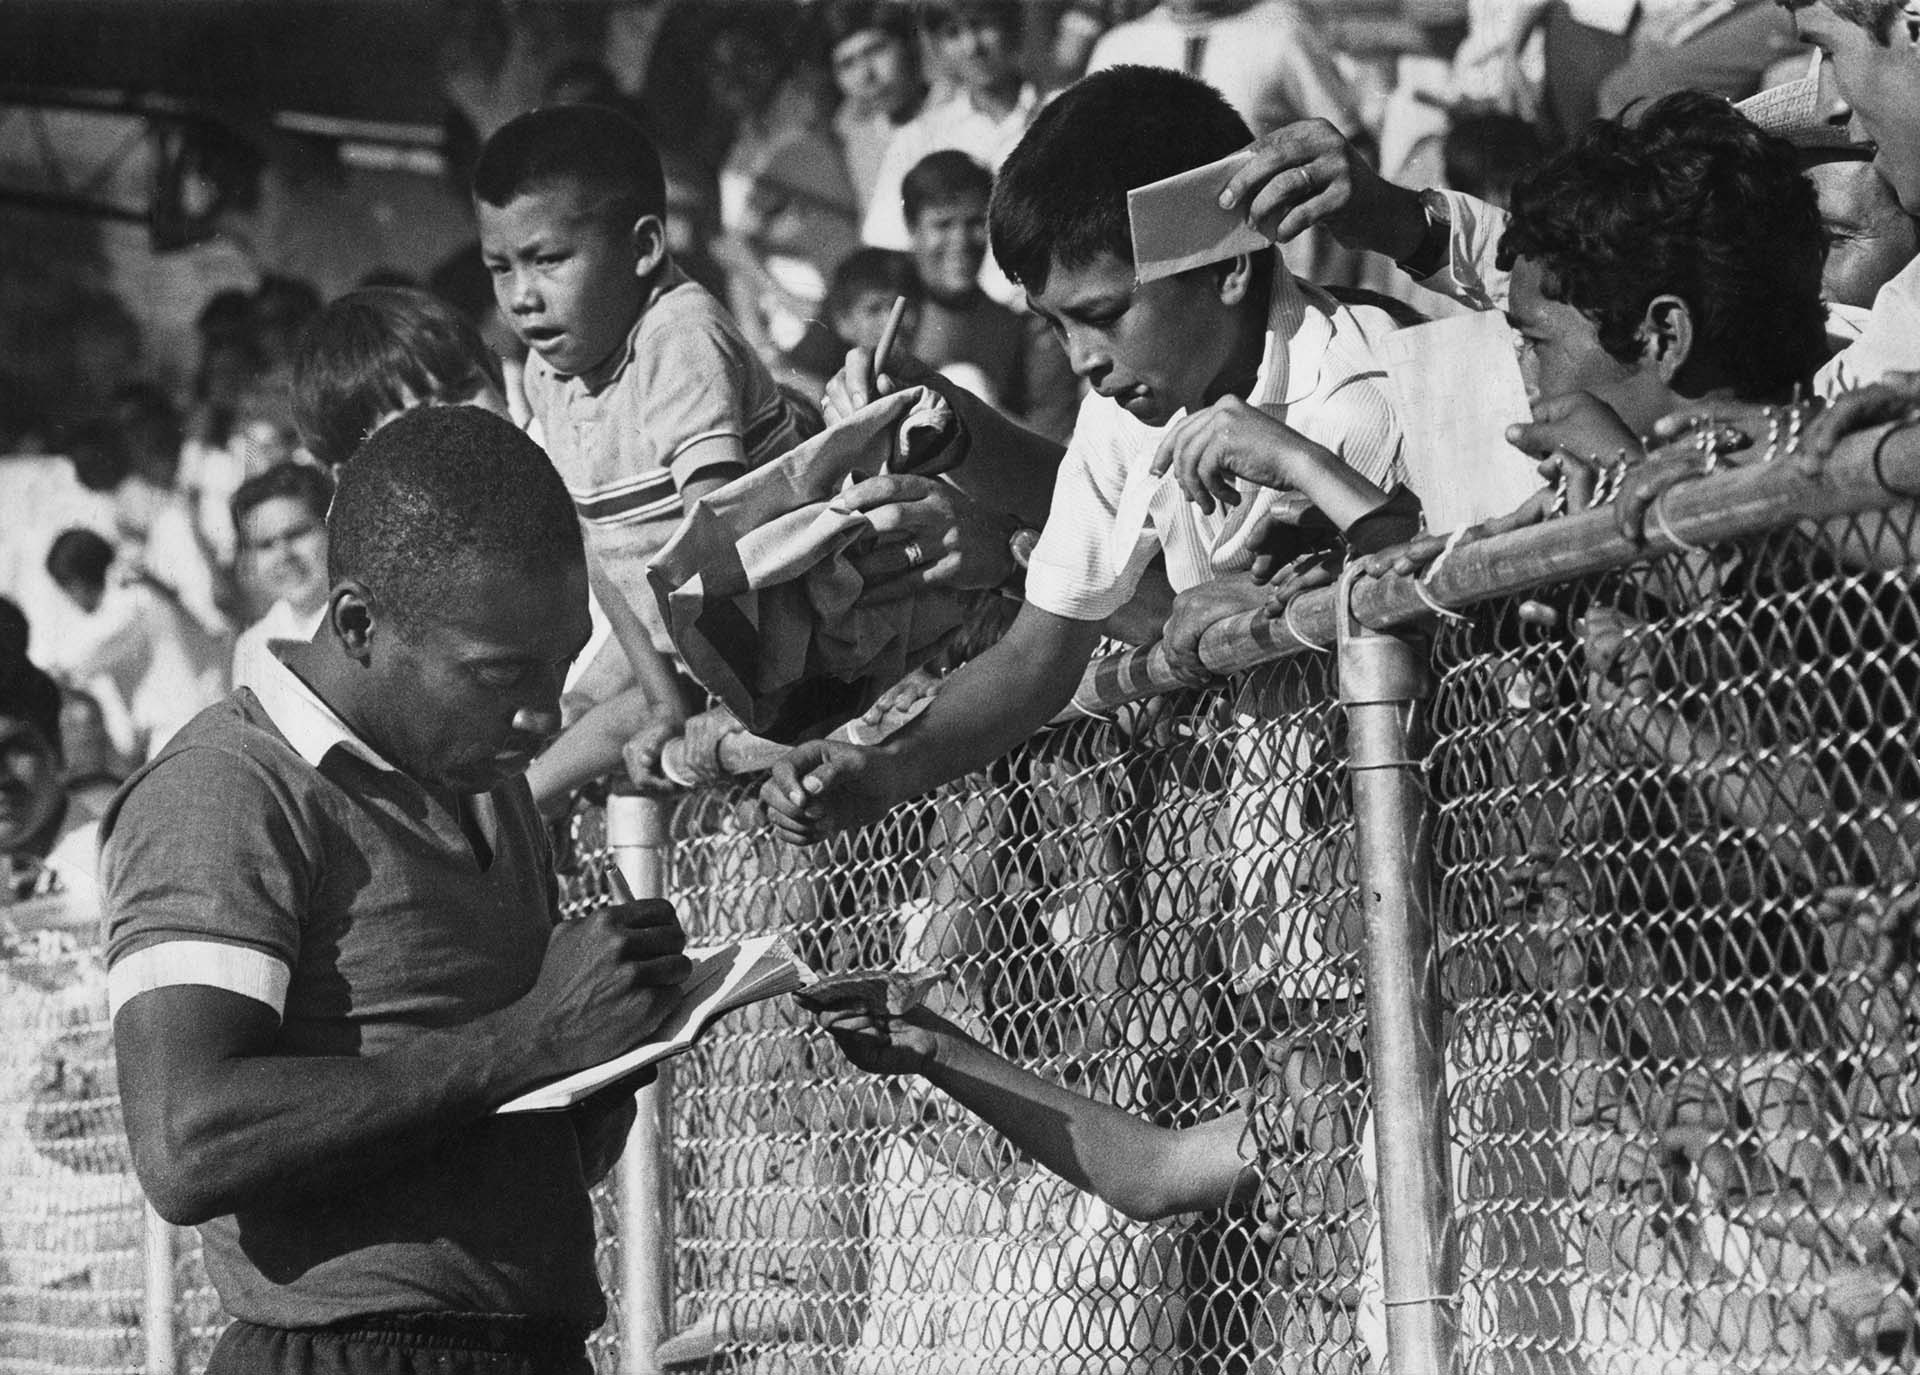 Su rendimiento dentro del campo de juego transformó a Pelé en una megaestrella en la década del 60